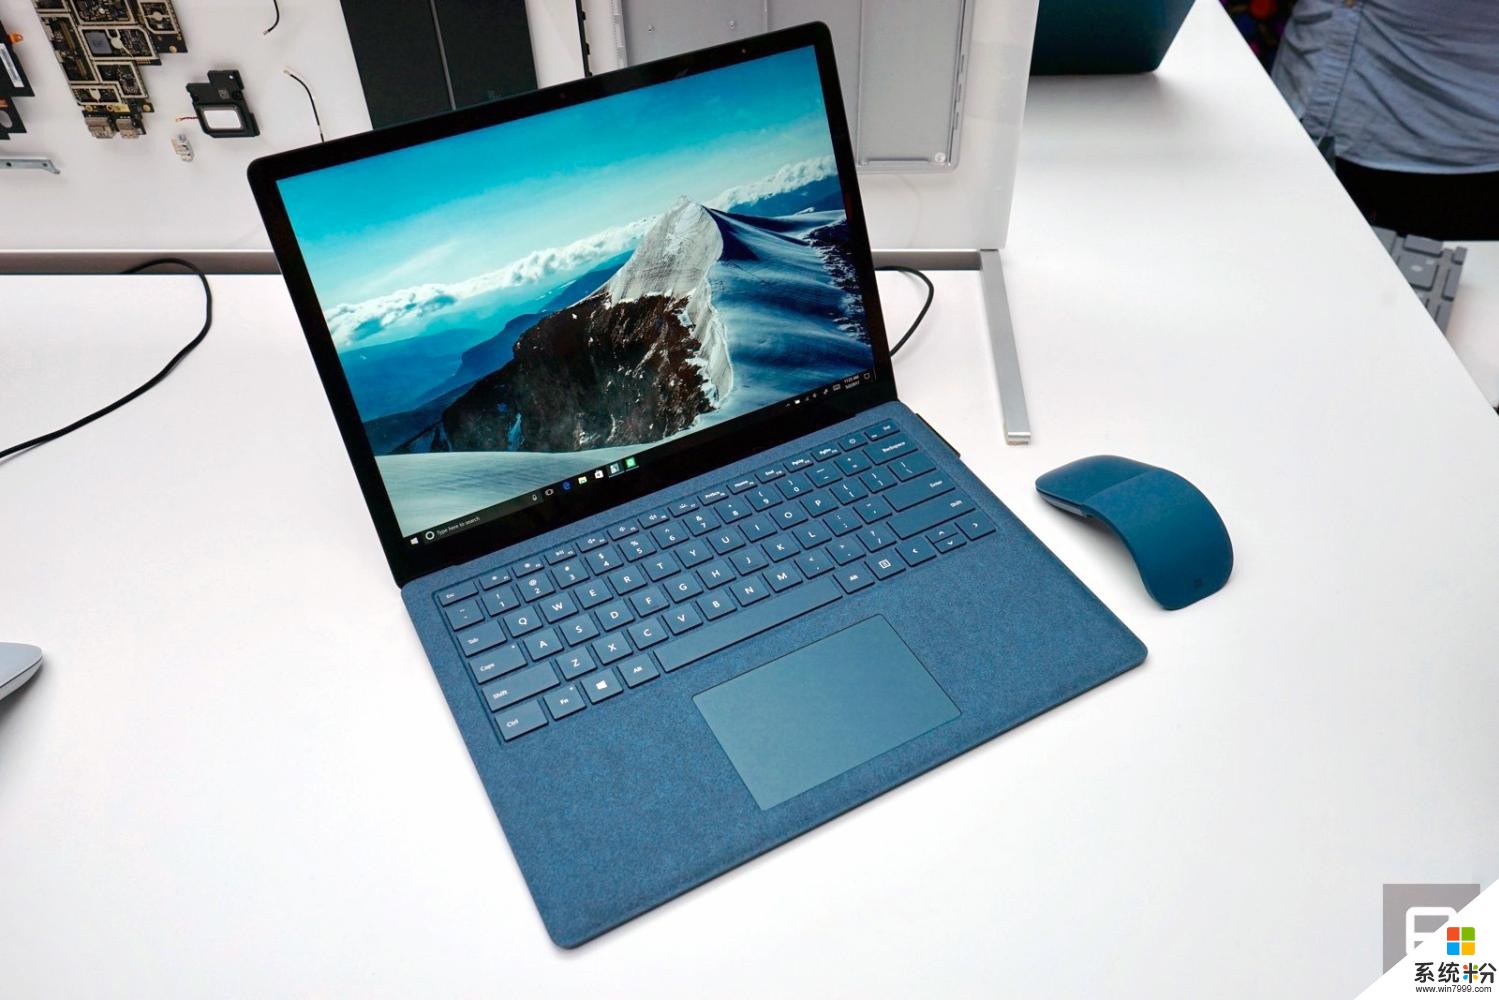 显然, 微软觉得 Surface Laptop 不需要什么“花活”来吸引眼球